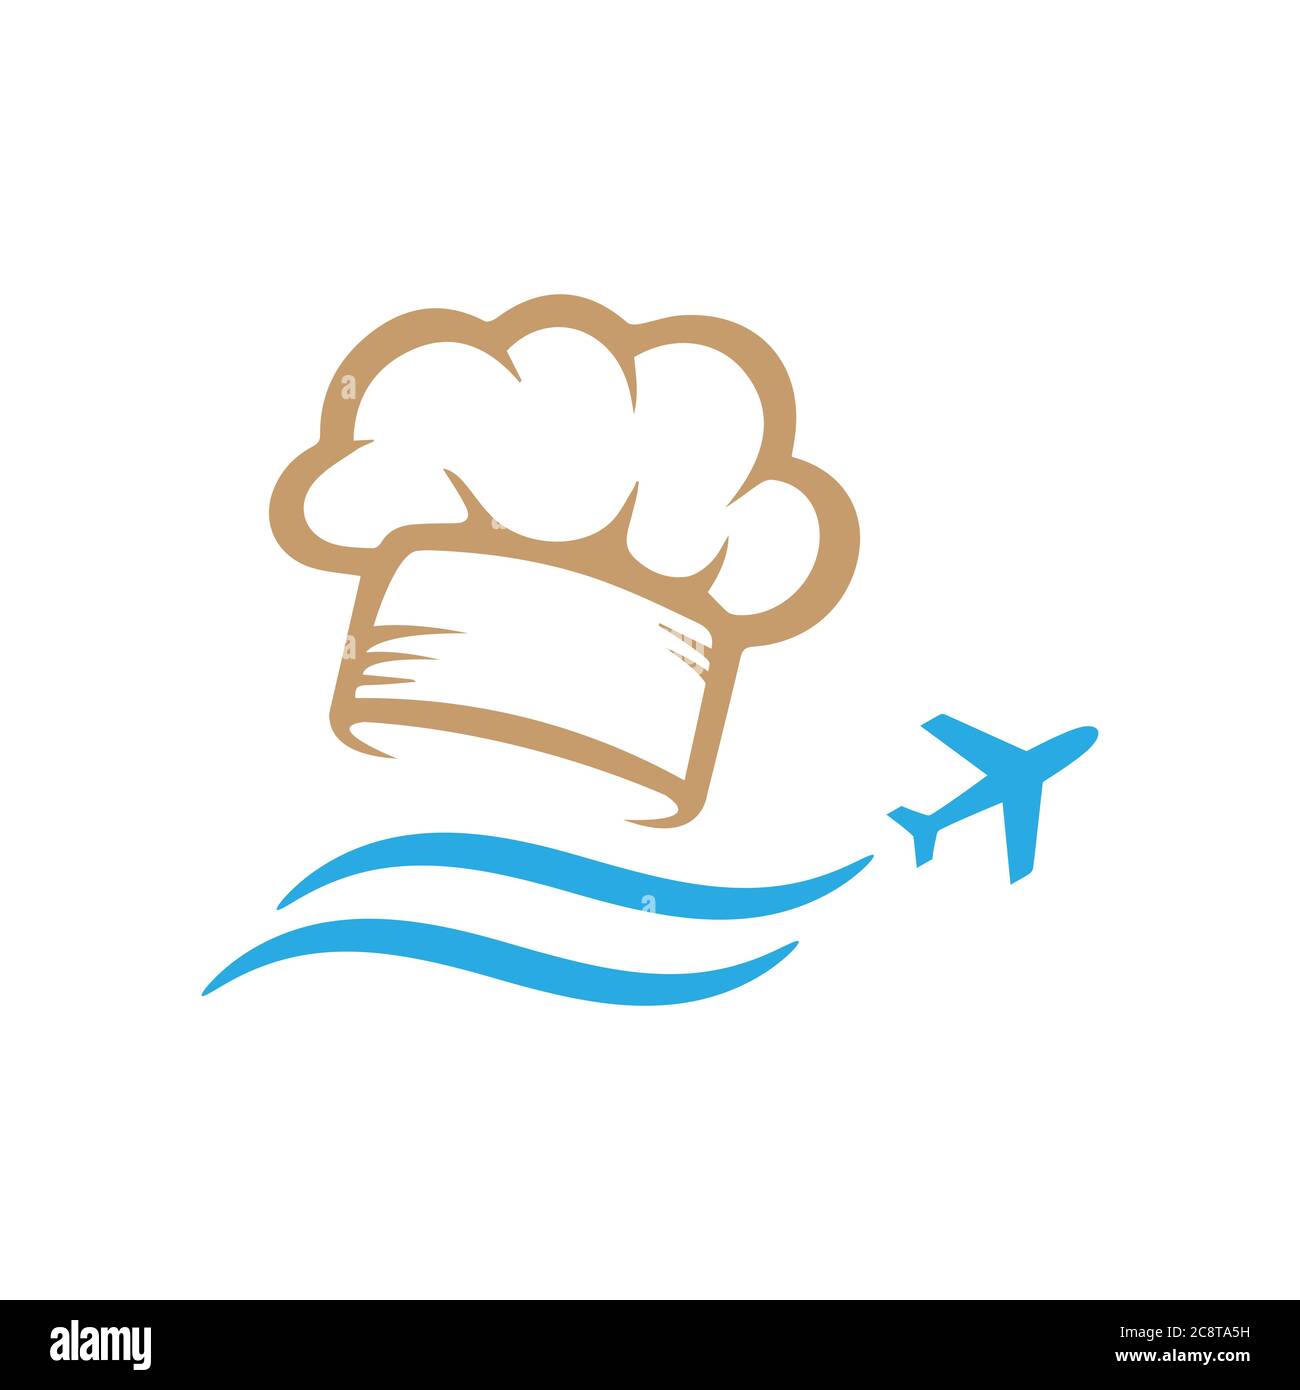 Kombinationsbilder von Transporten Symbol und Geschirr Symbol für Lebensmittel Blogging vlogging Reisen Logo Design Vektor Stock Illustration Stock Vektor